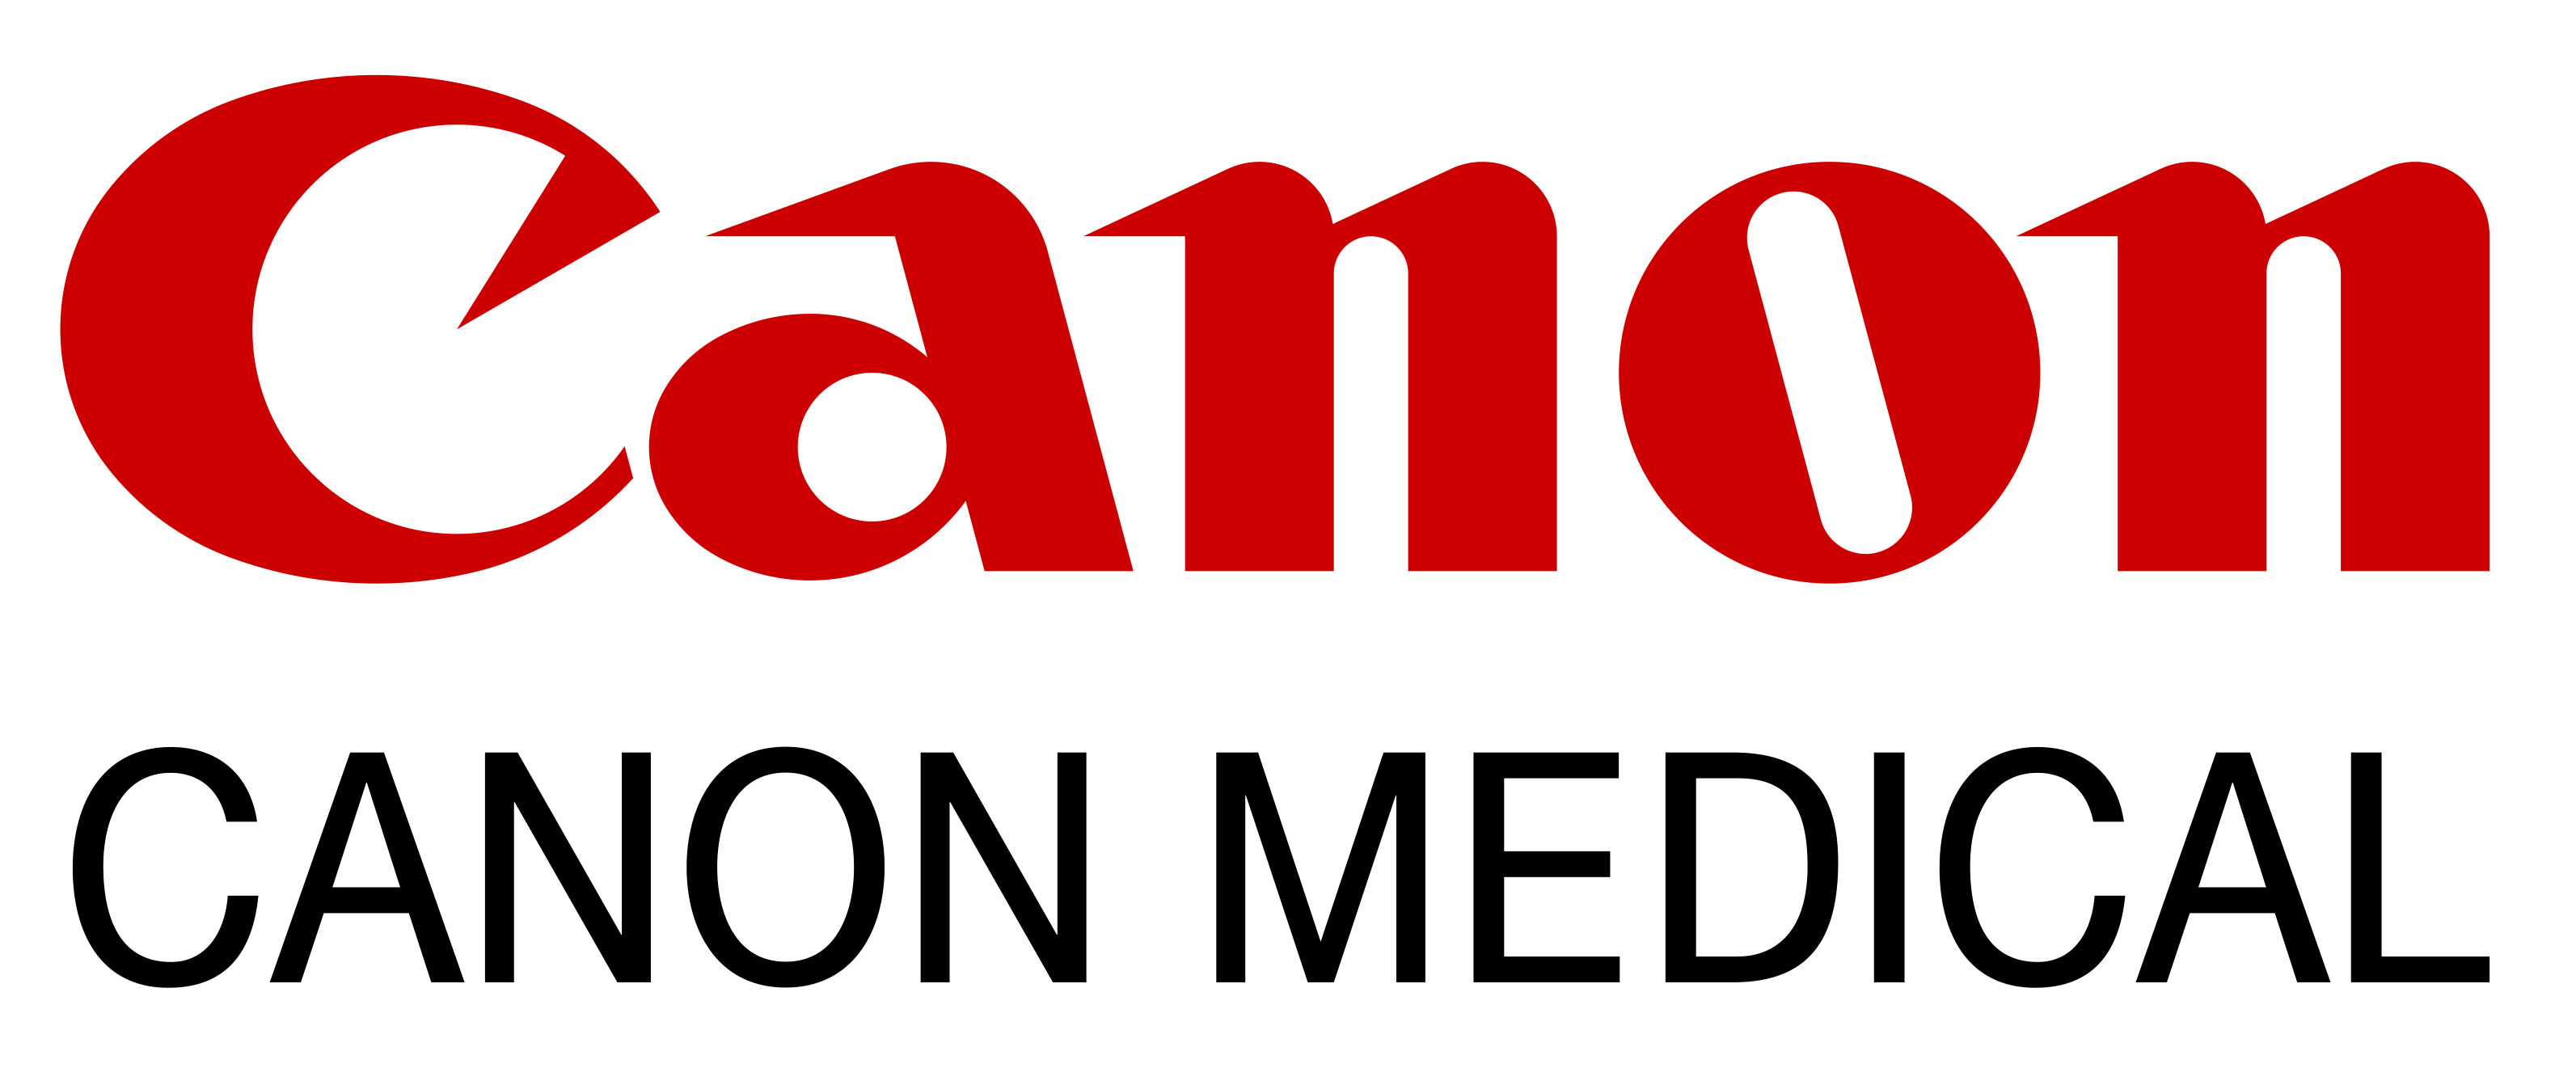 Canon Medical Logo